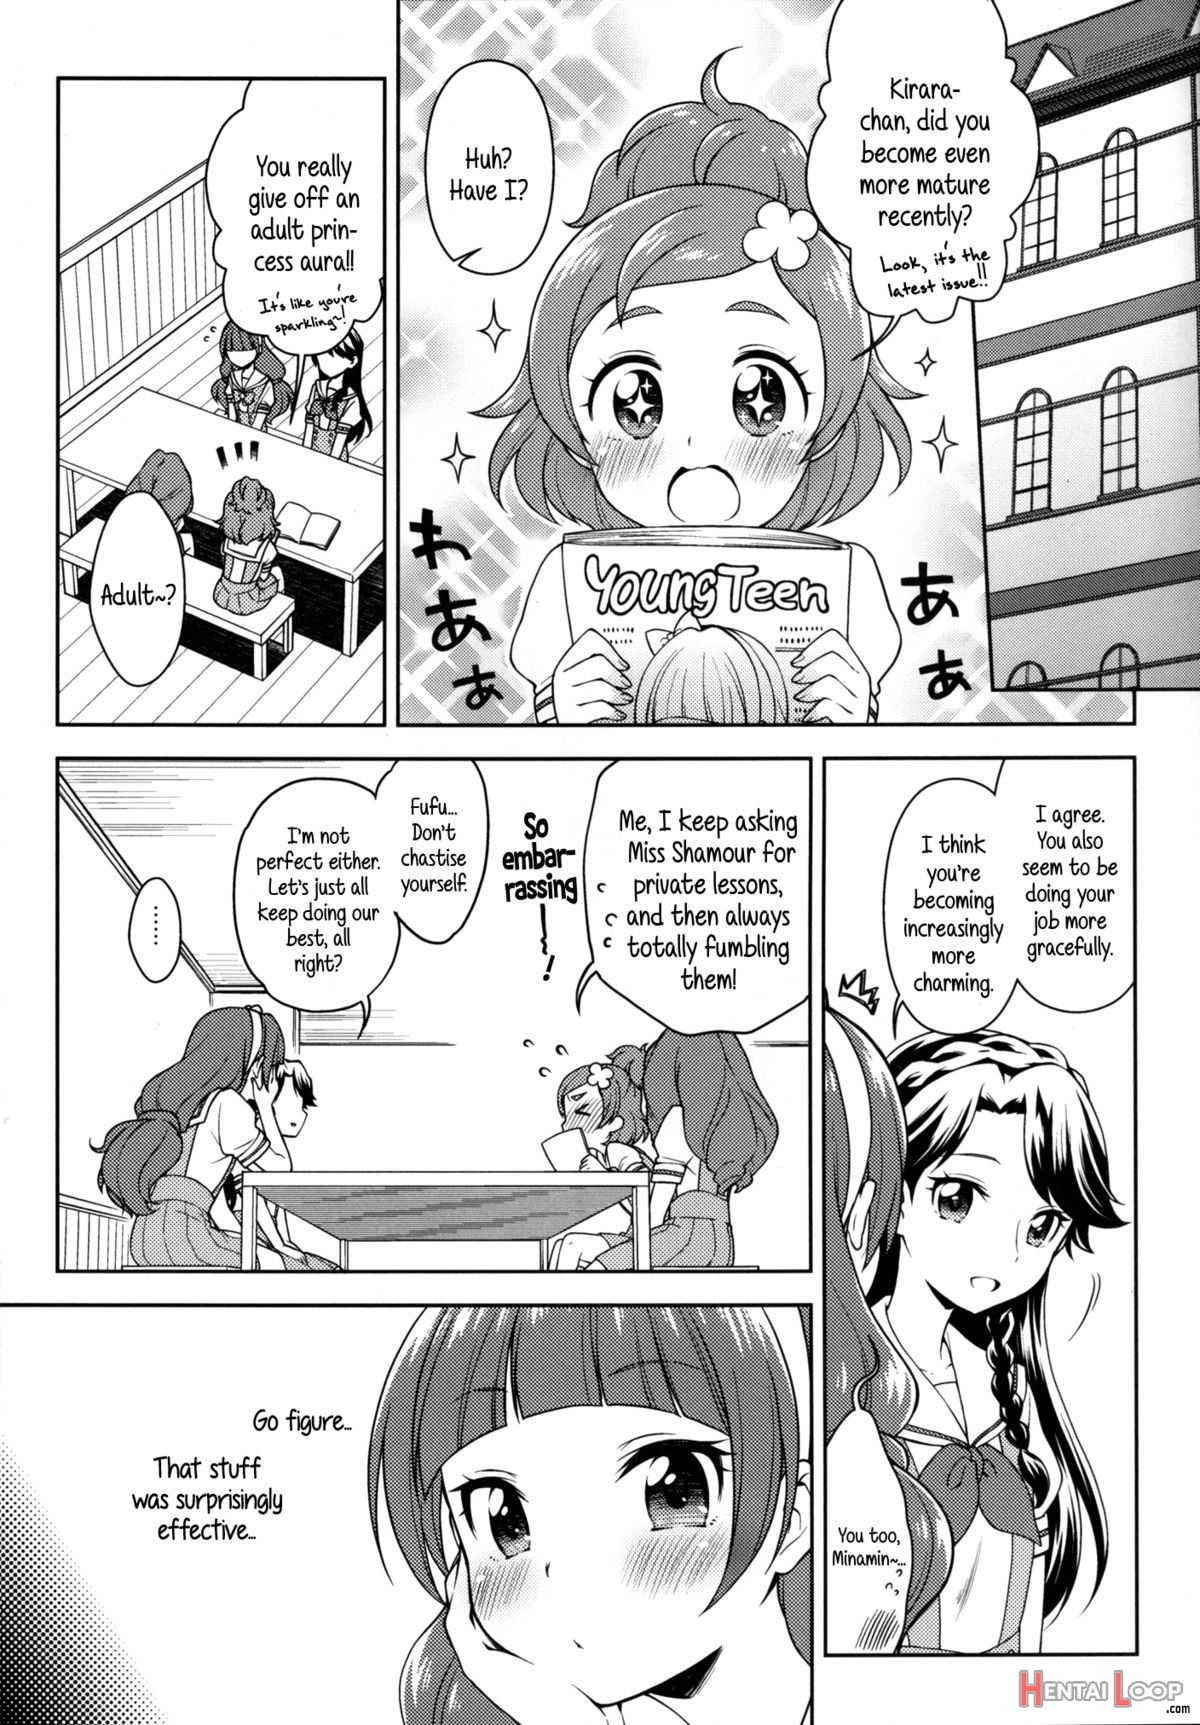 Kirara's Princess Lessons page 9